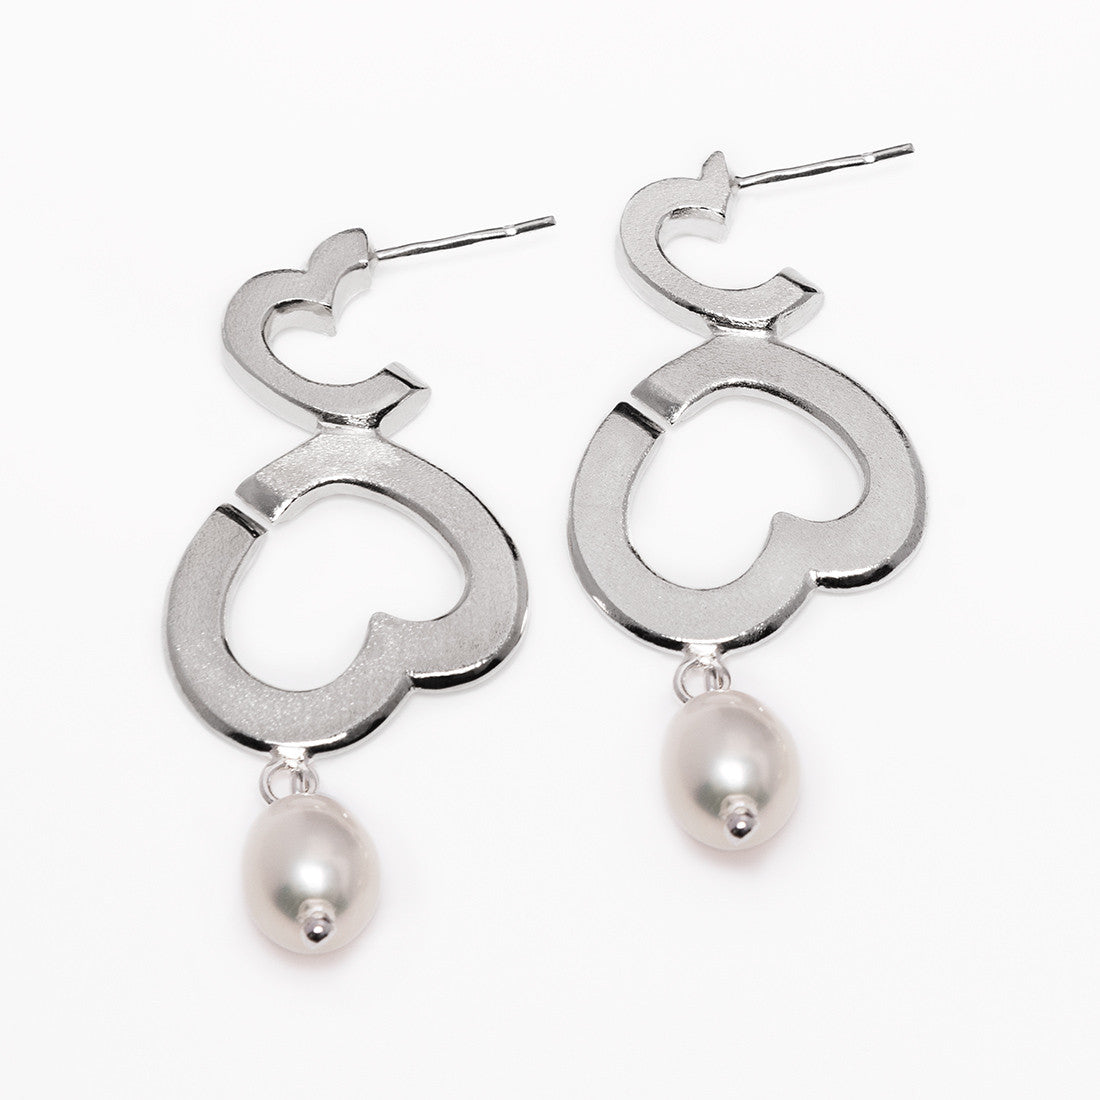 Bubblelove earrings with pearl